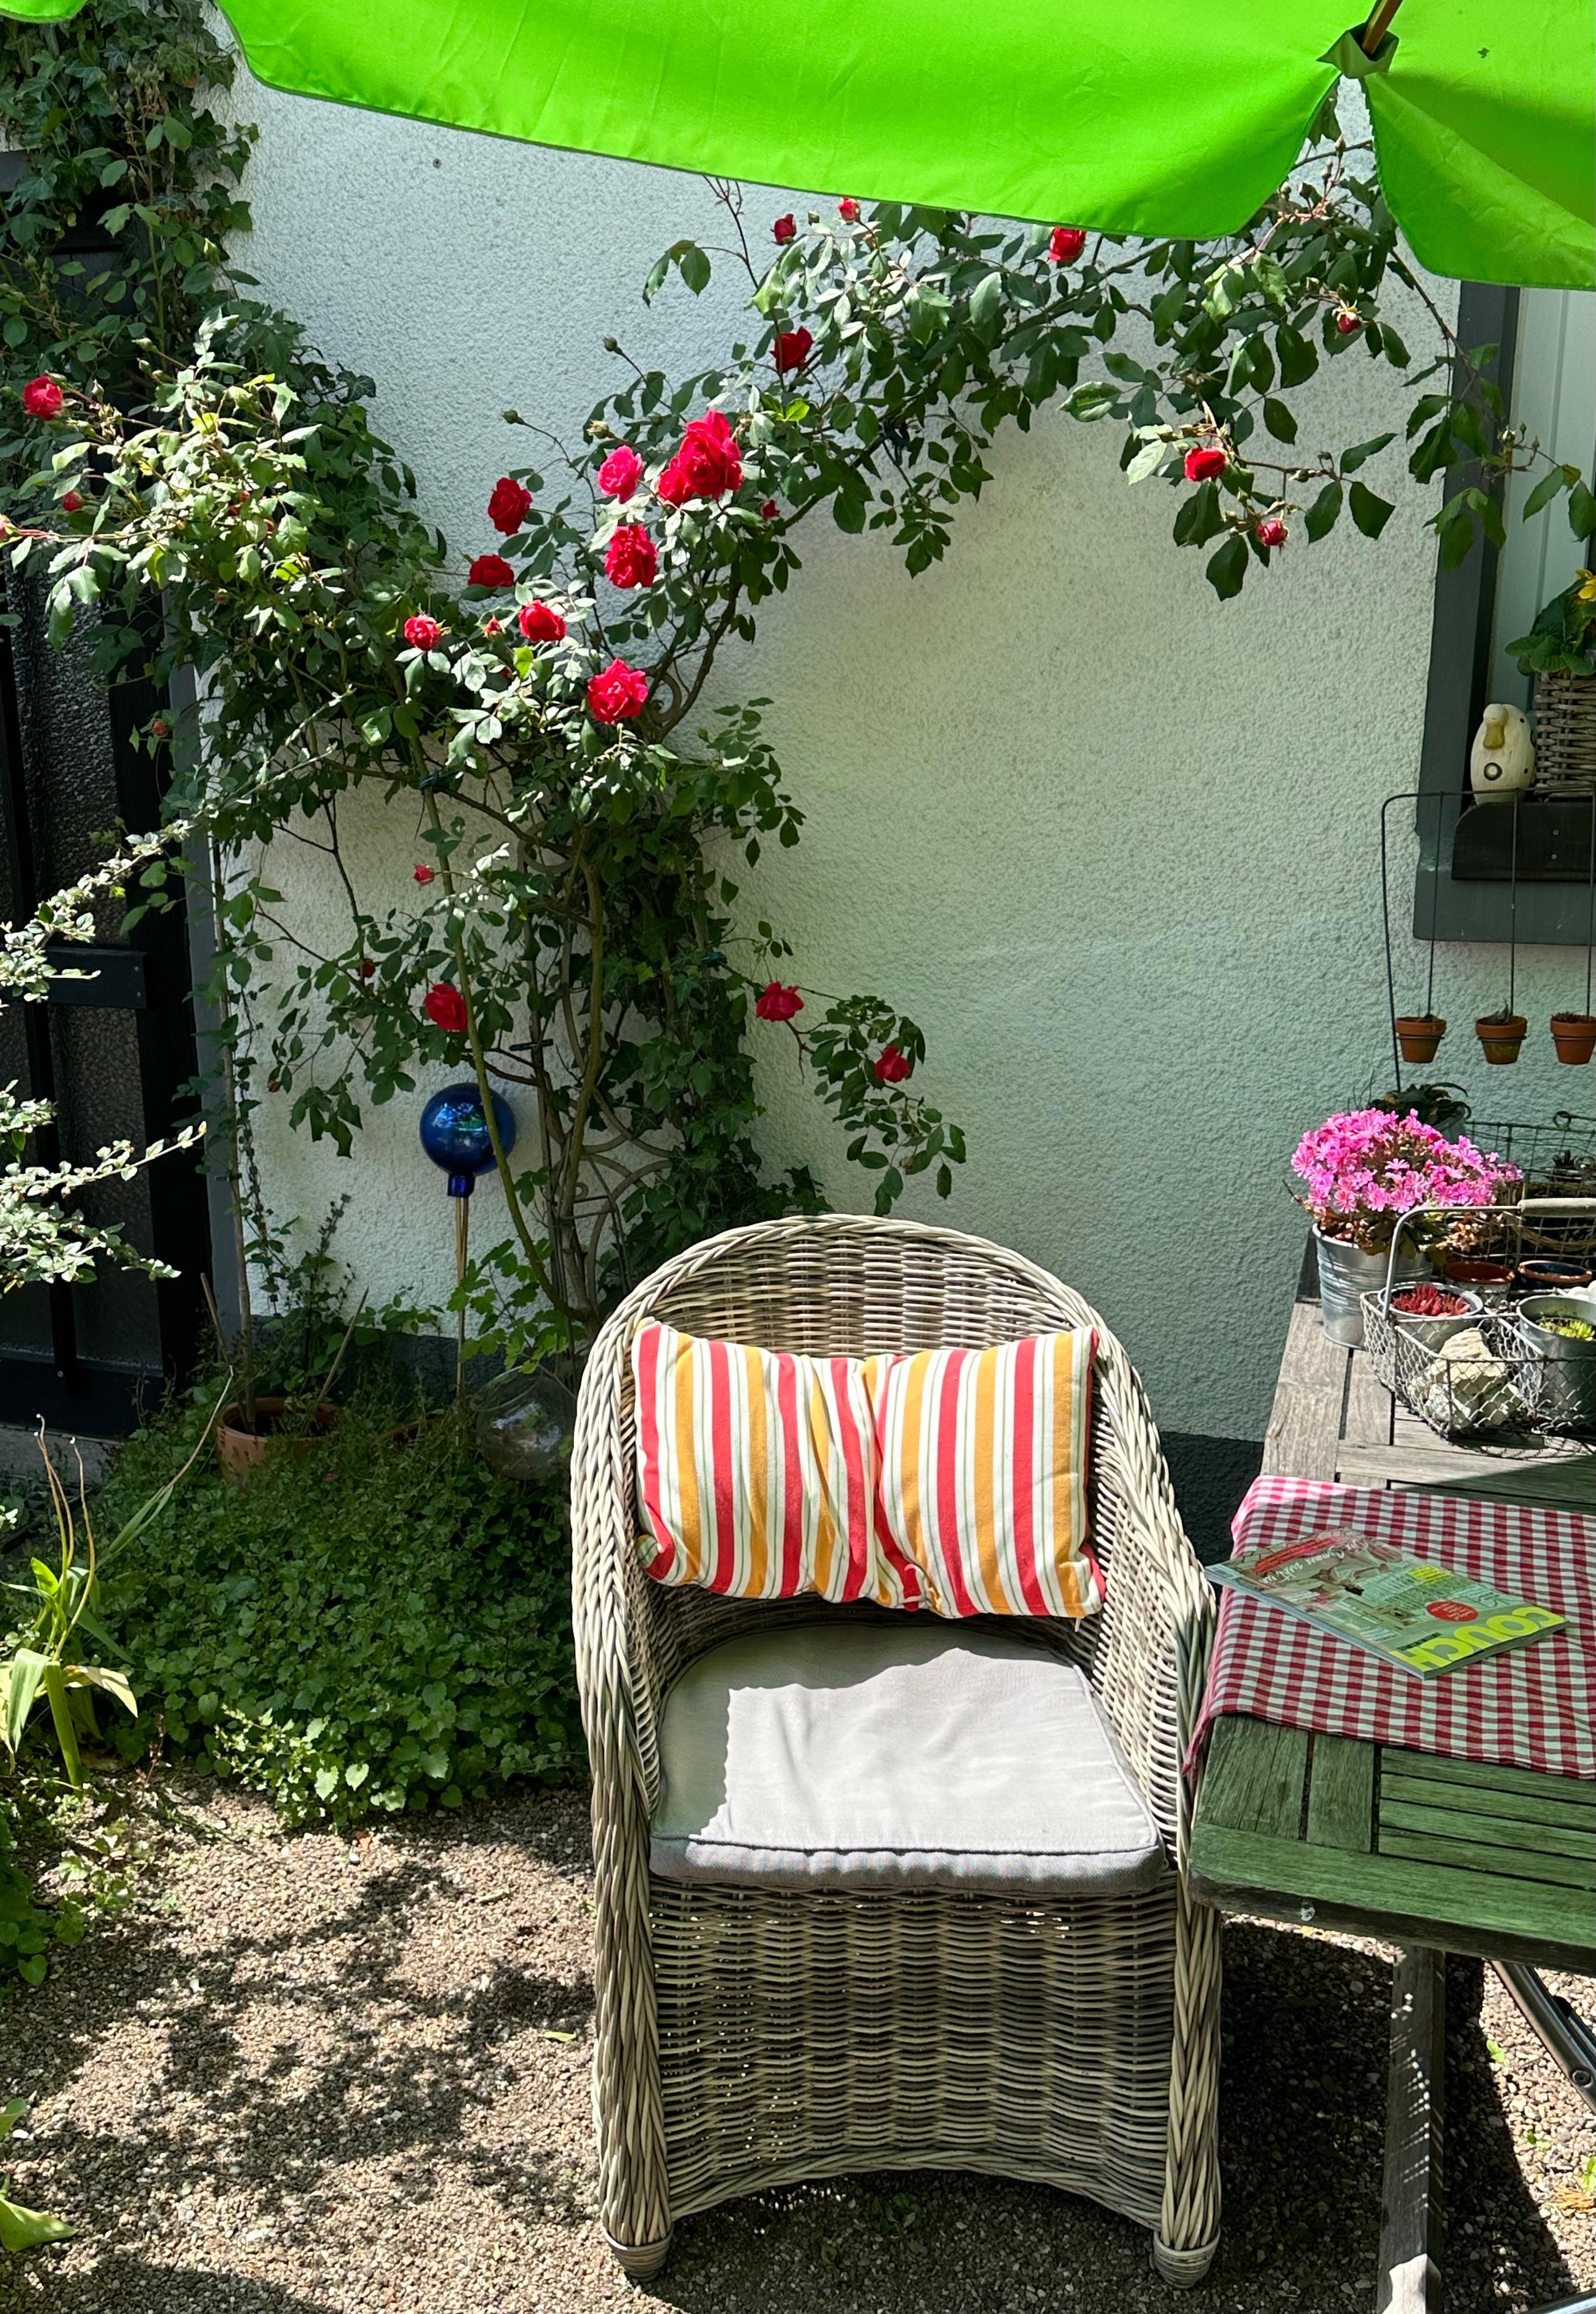 Sonnenplätzchen unter Rosen. So lässt es sich aushalten 😎.
#Garten #Rosen